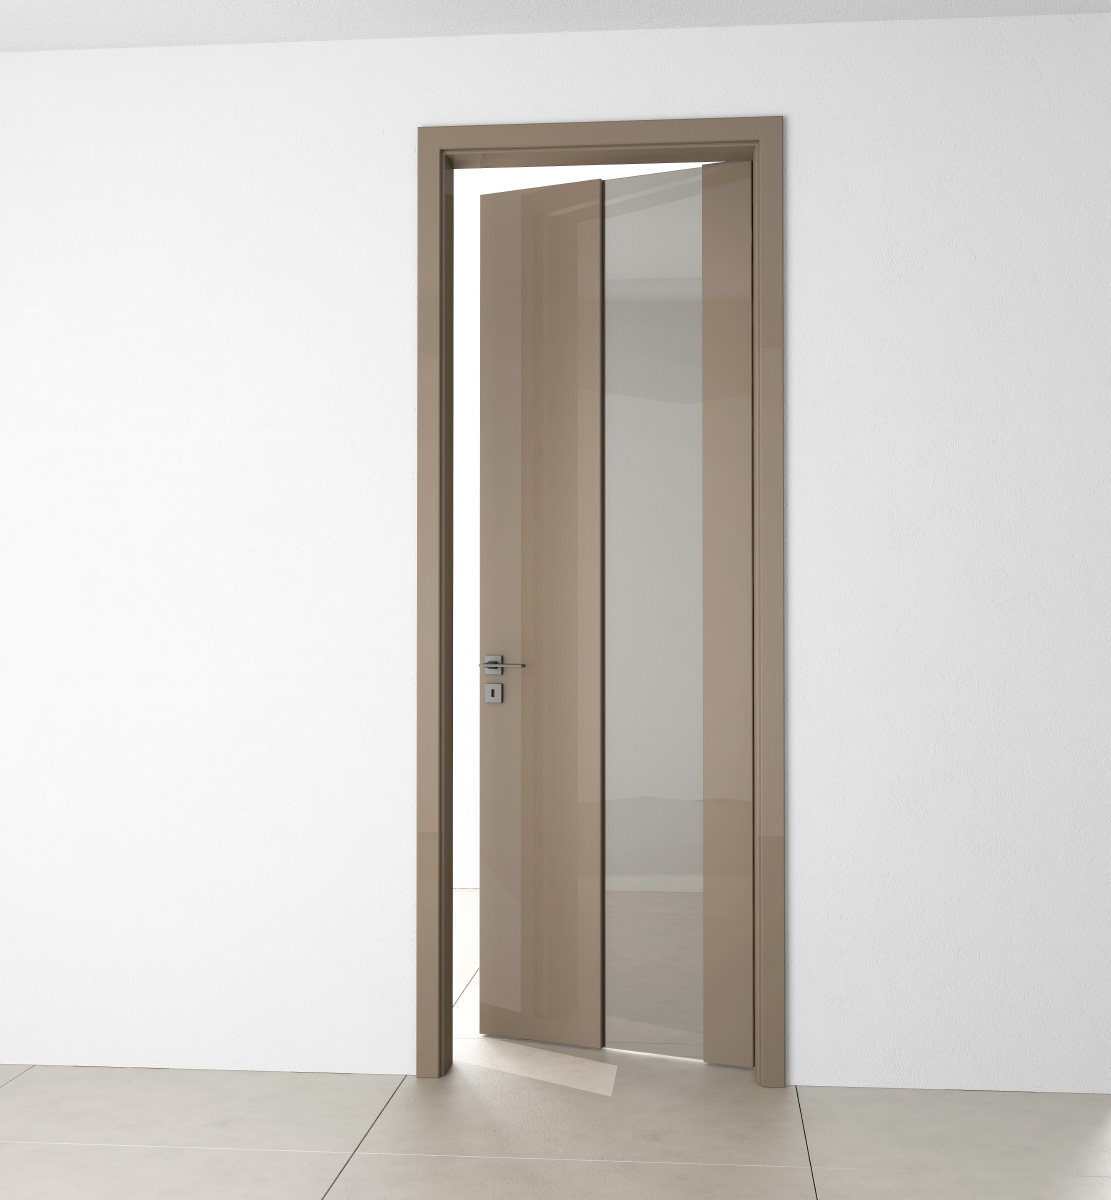 Jednoduché a elegantní prosklené dveře z kolekce HANÁK.